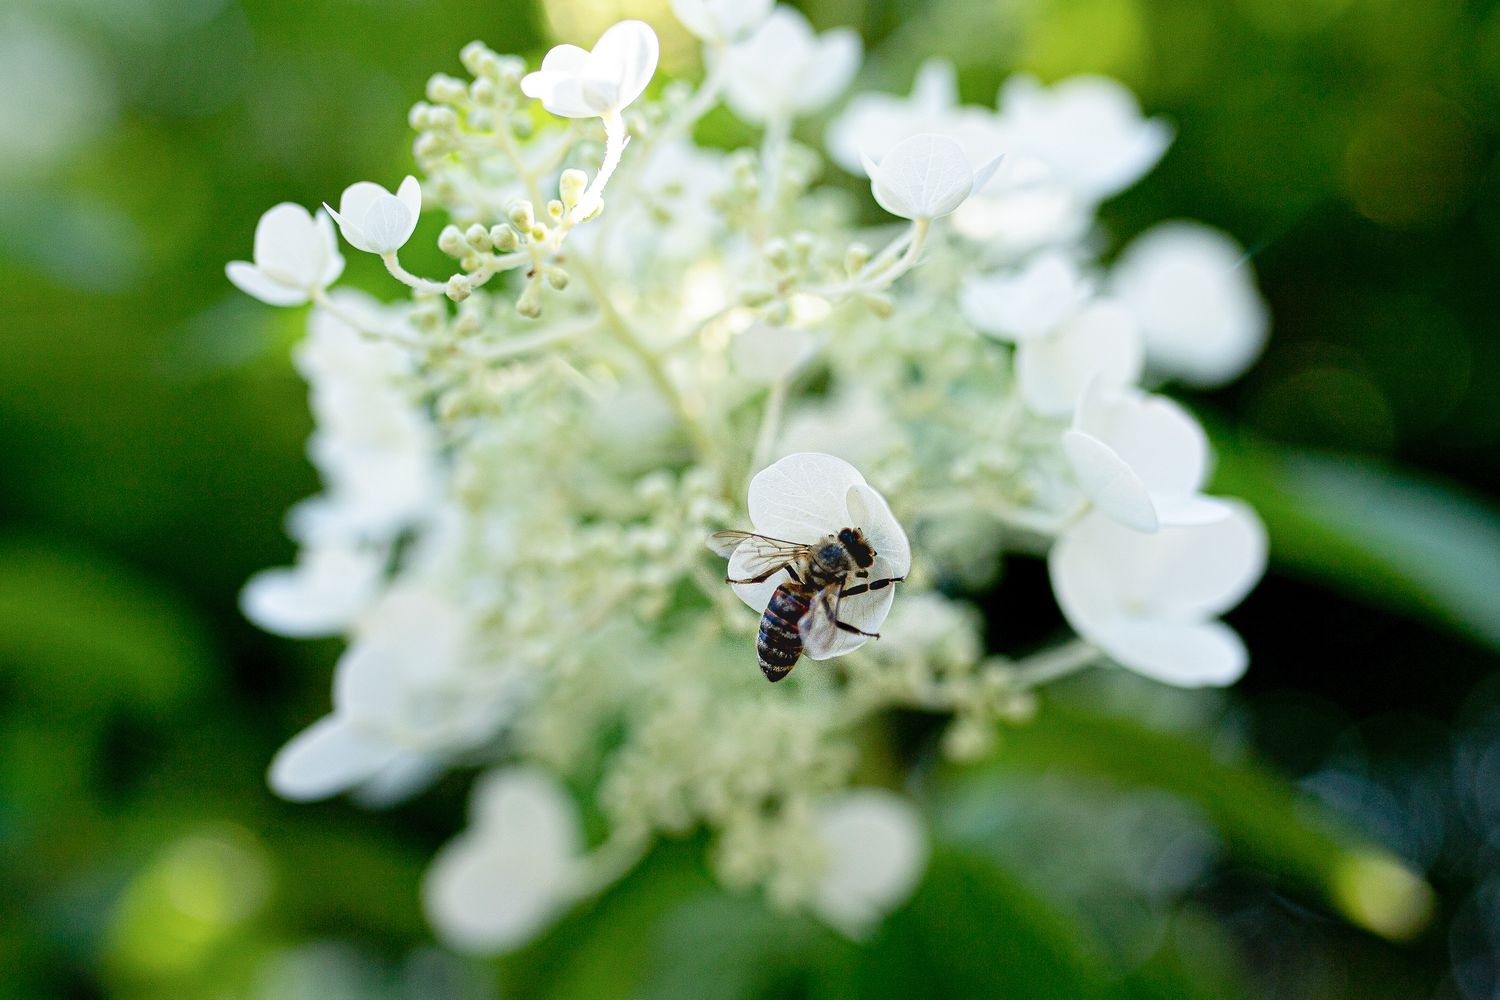 Comment attirer les abeilles et autres pollinisateurs dans votre jardin